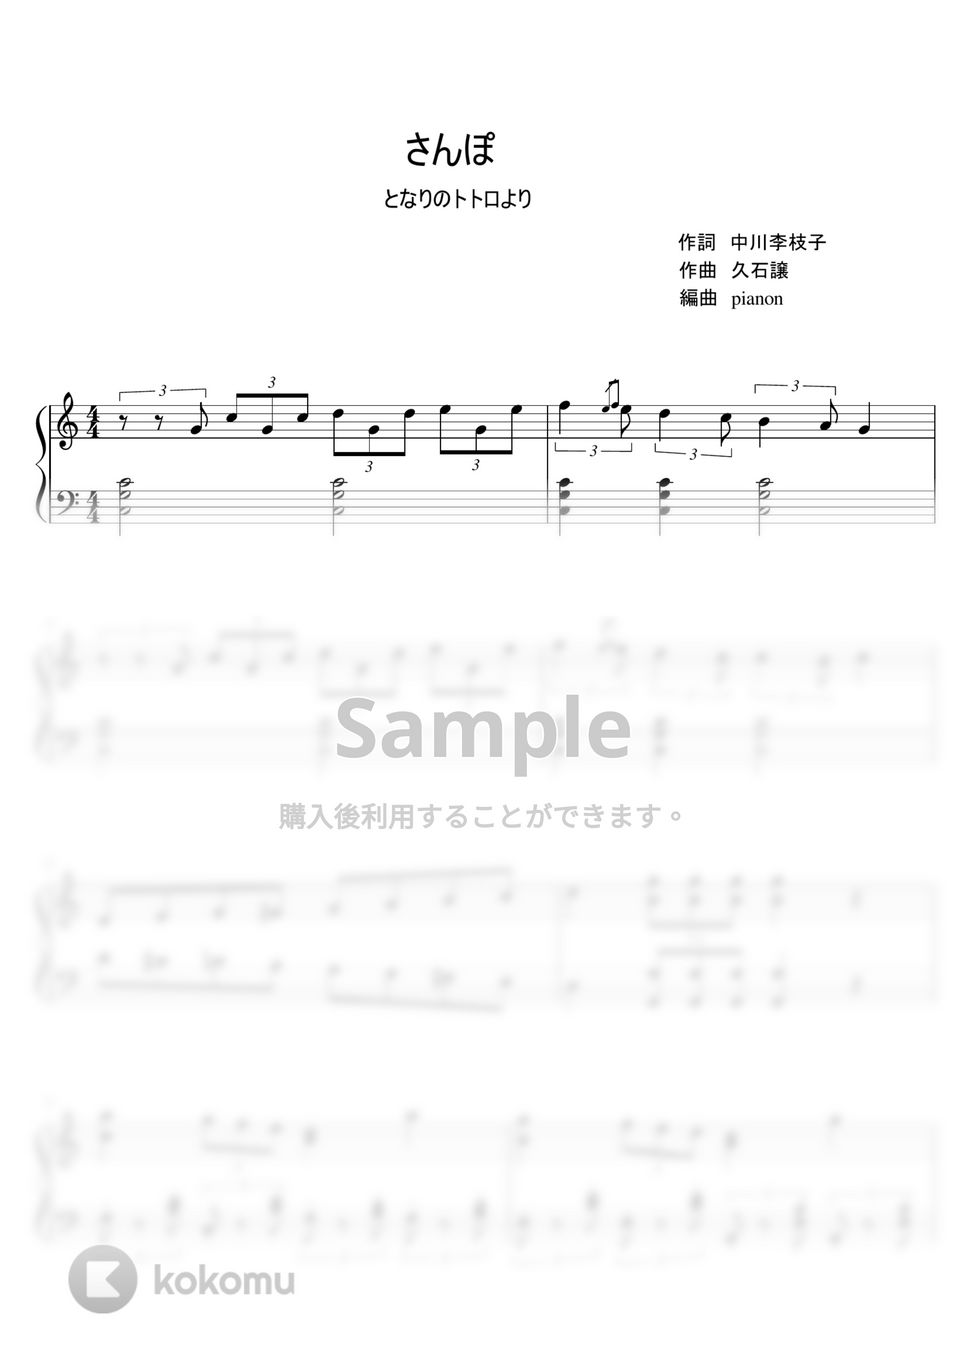 久石譲 - さんぽ (ピアノソロ / 中級) by pianon